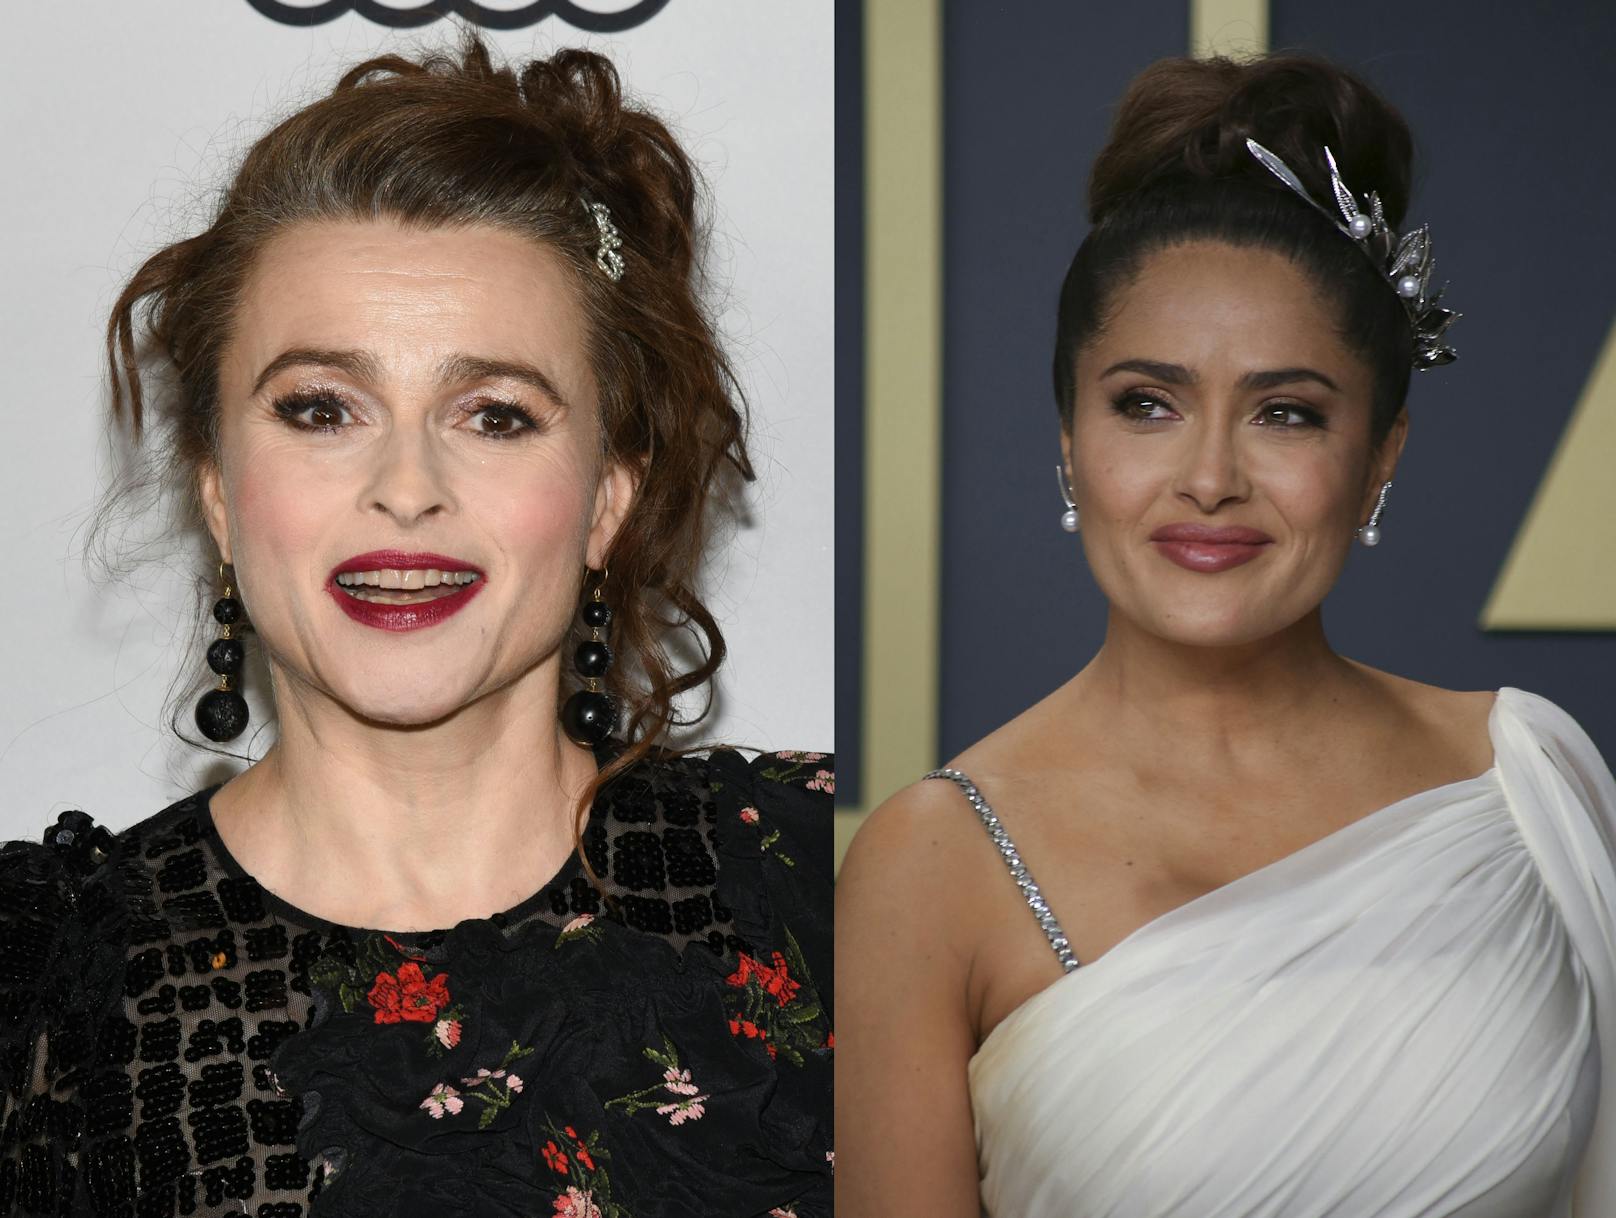 Helena Bonham Carter und Salma Hayek sind ebenfalls gleich alt. Die böse Harry Potter Hexe und die sexy Latina wurden beide im Jahr 1966 geboren